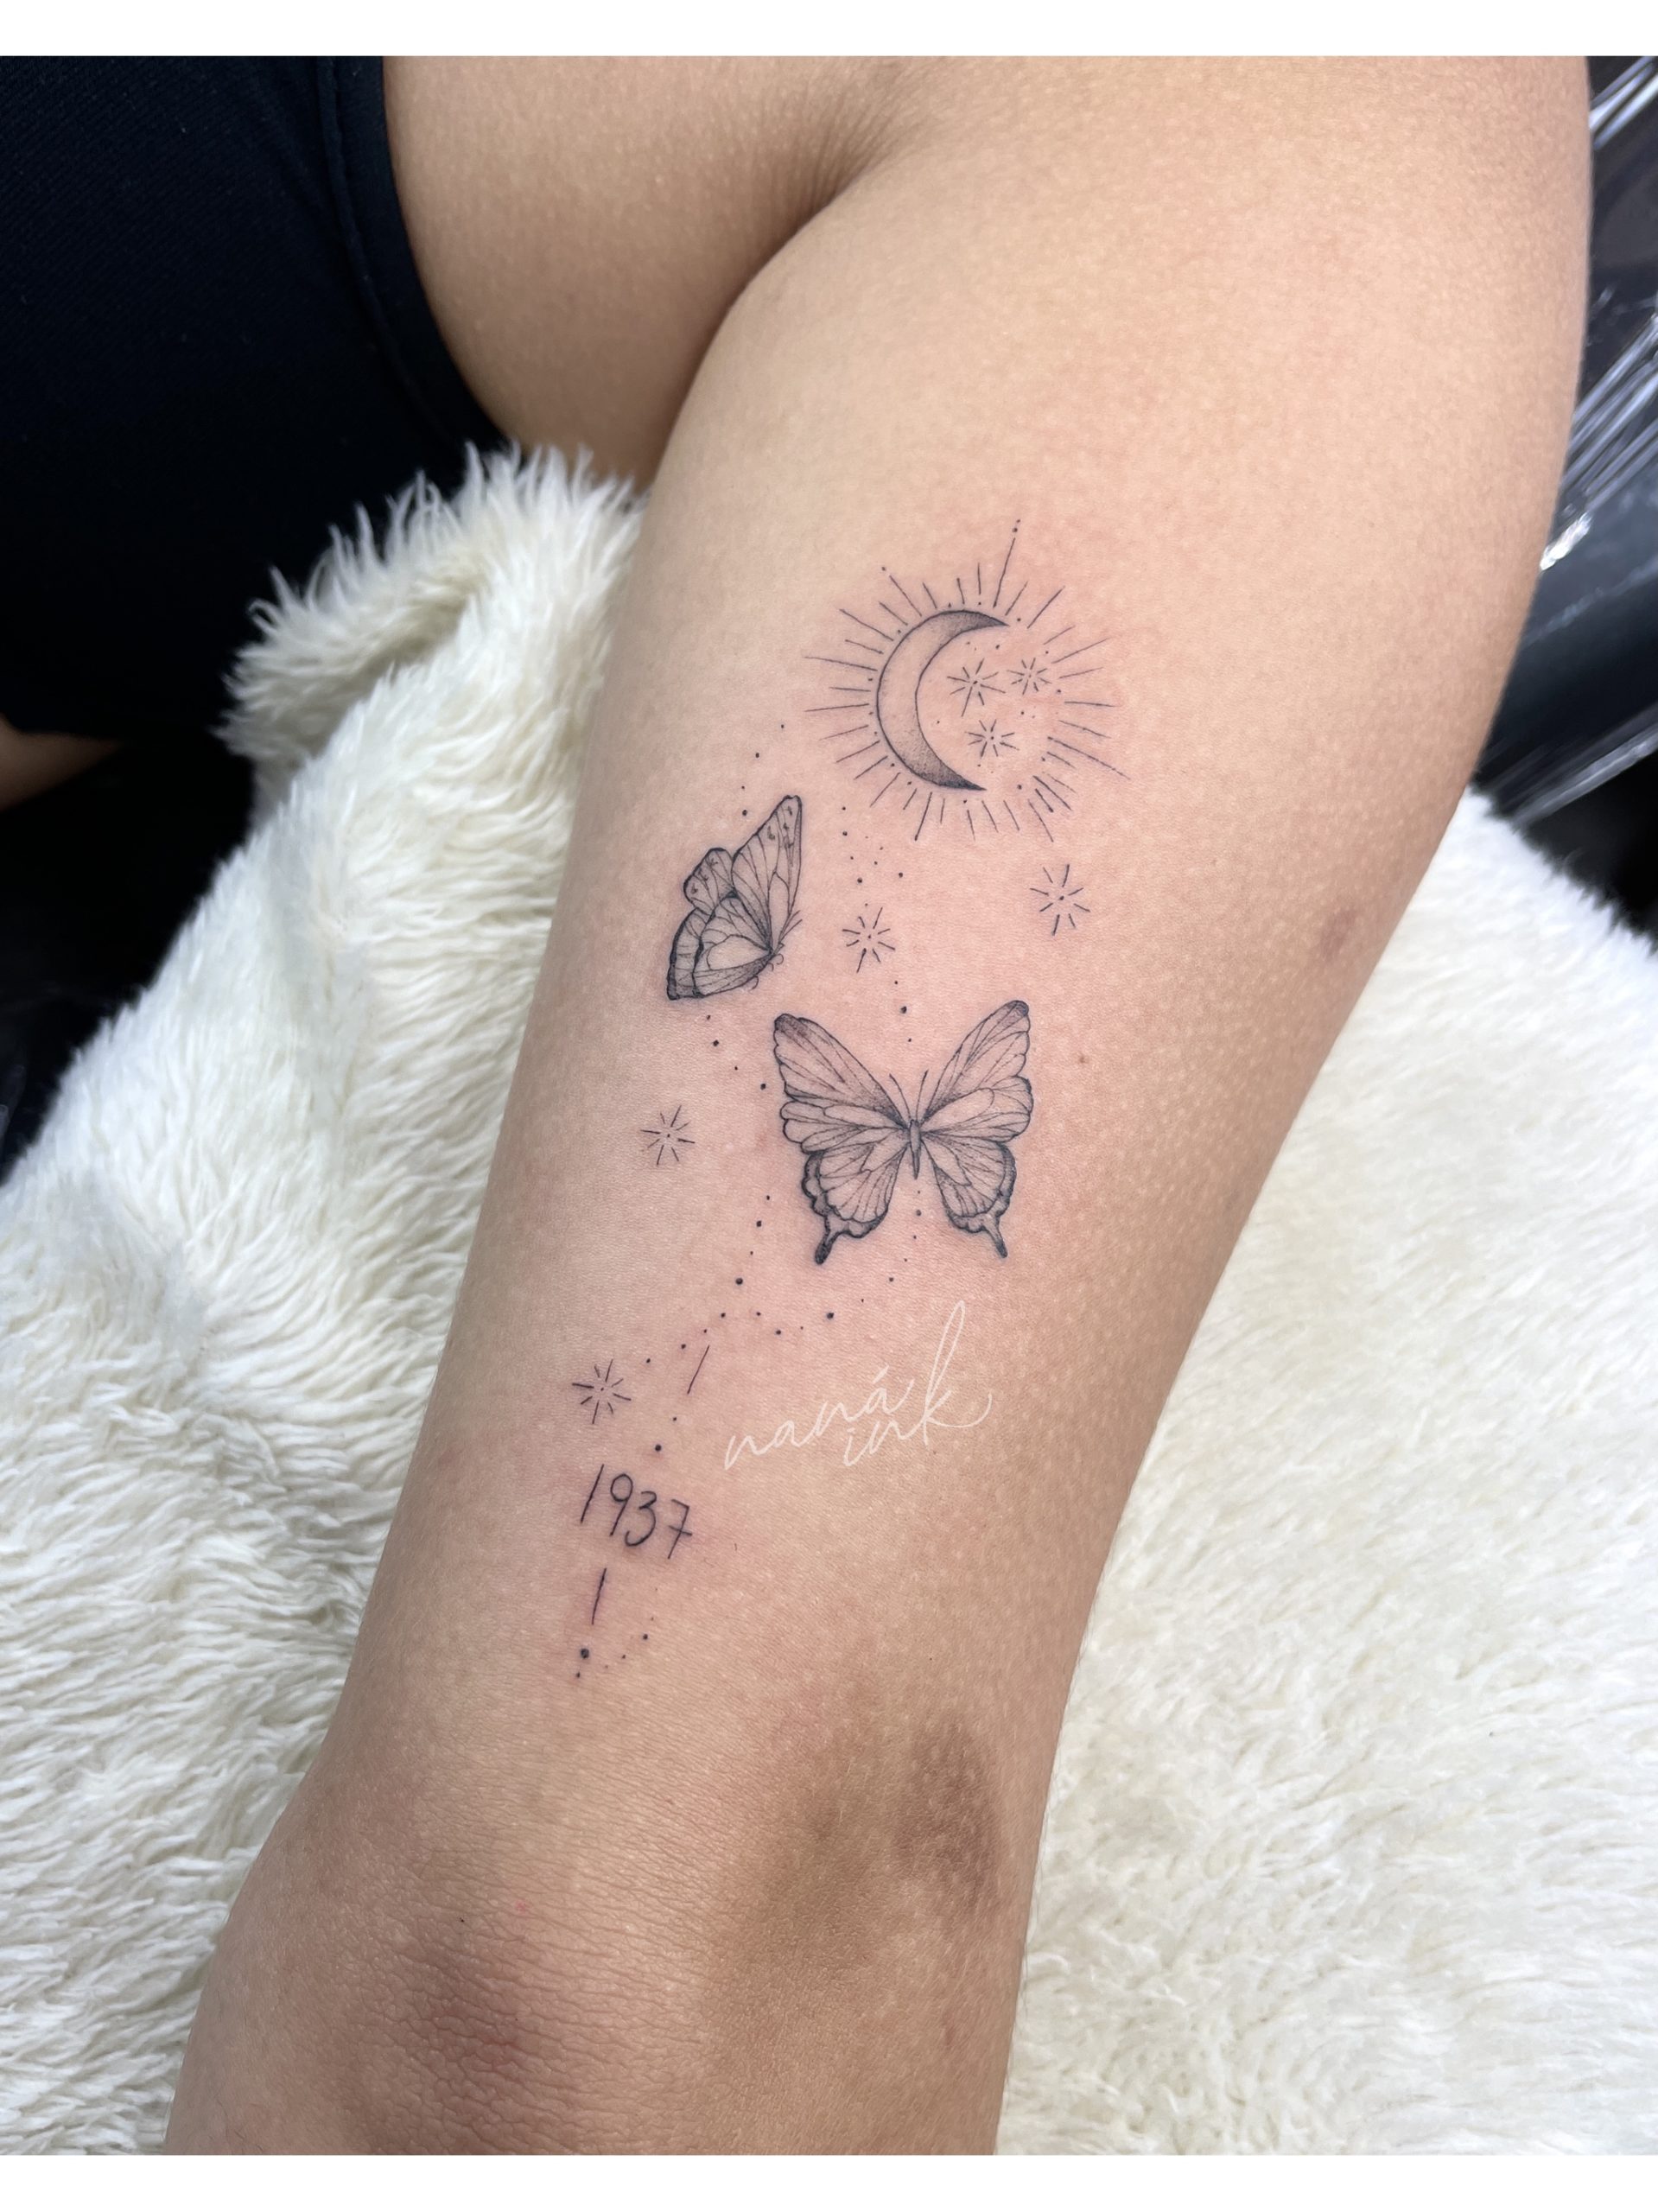 Topo tattoo de borboleta no braço Portuguese Abzlocal com pt